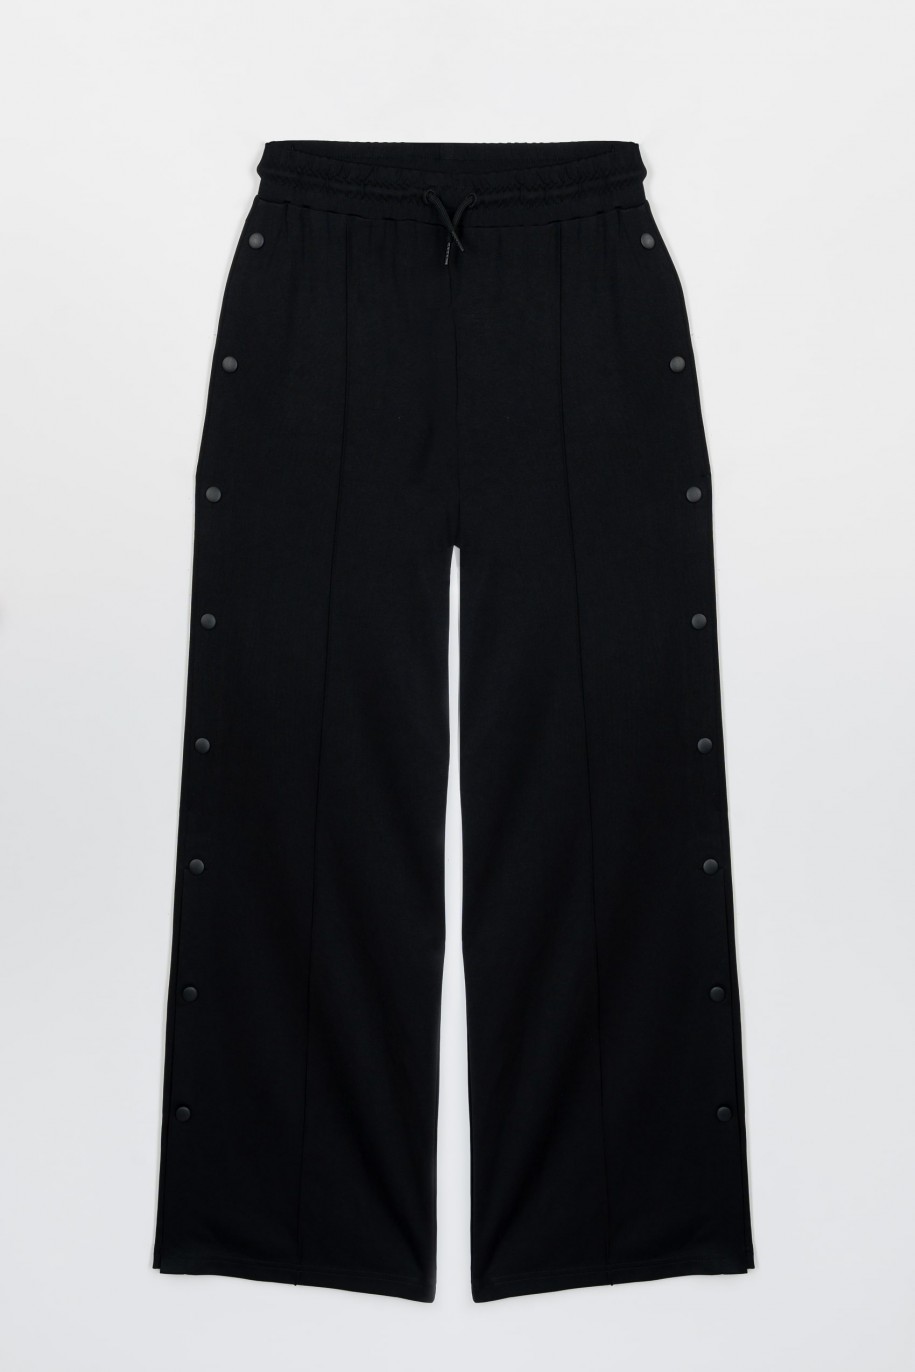 Czarne szerokie spodnie z nogawkami zapinanymi na napy - 47412